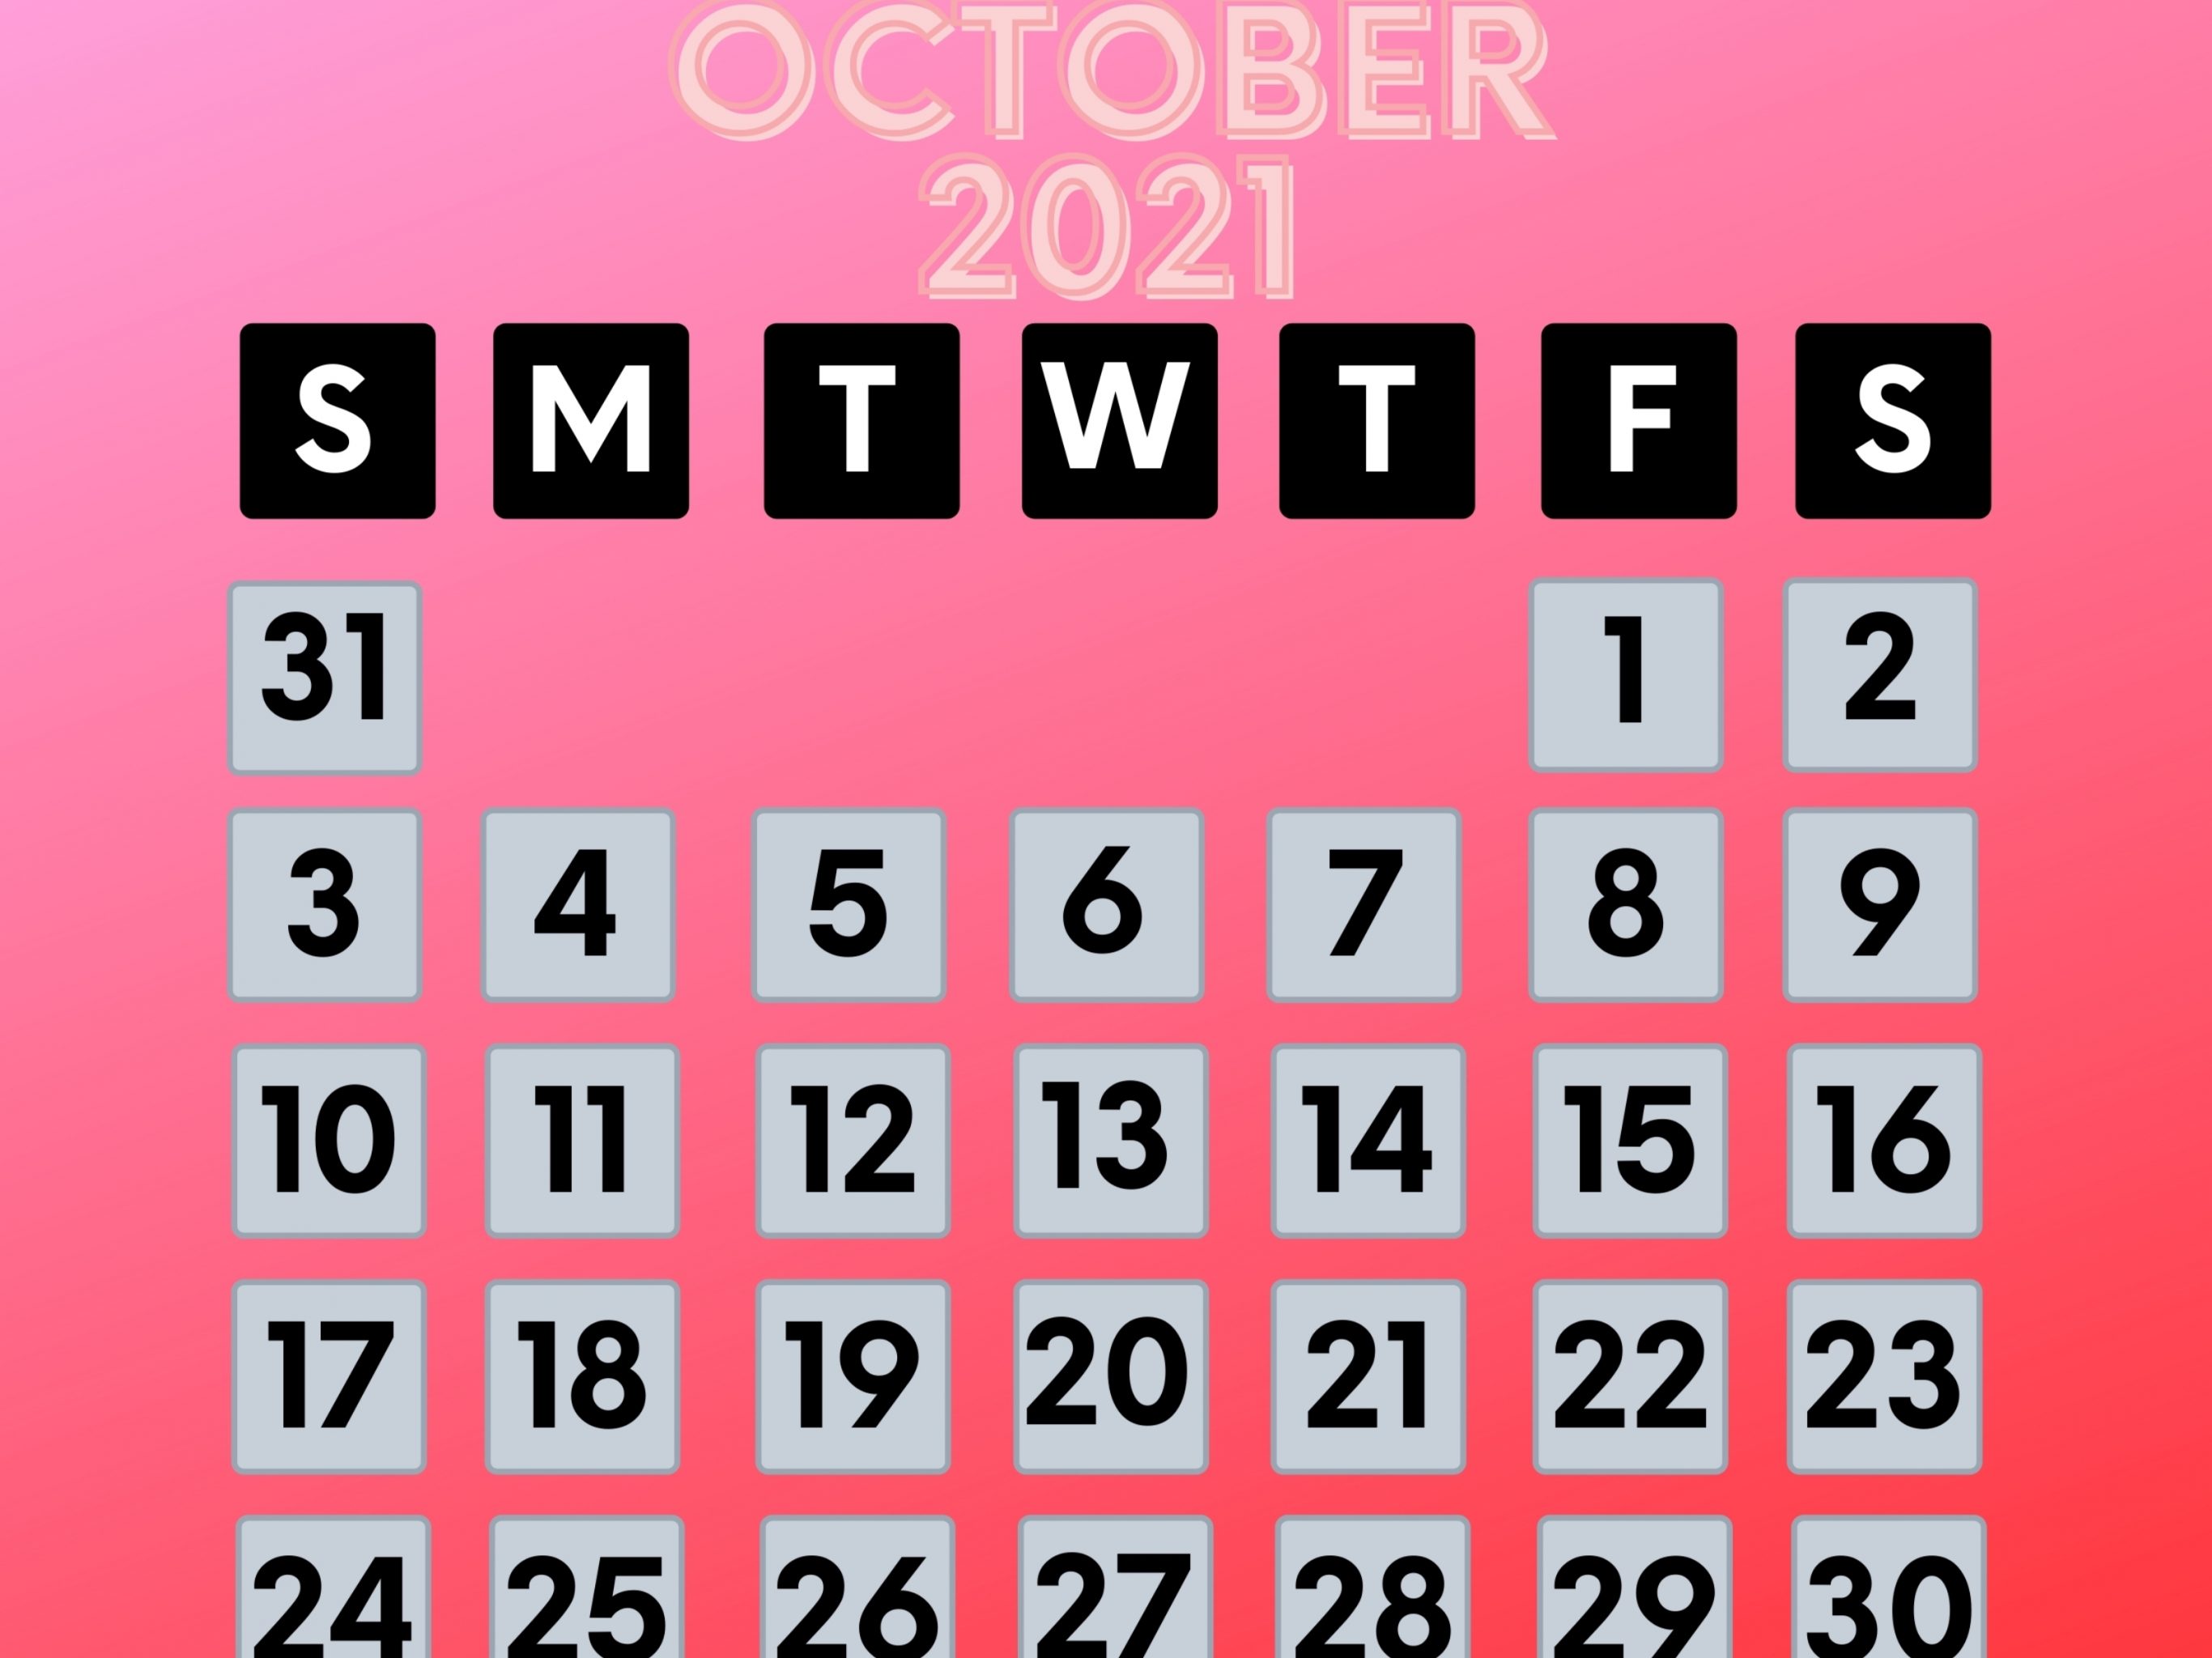 2732x2048 iPad air iPad Pro wallpapers October 2021 Calendar iPad Wallpaper 2732x2048 pixels resolution